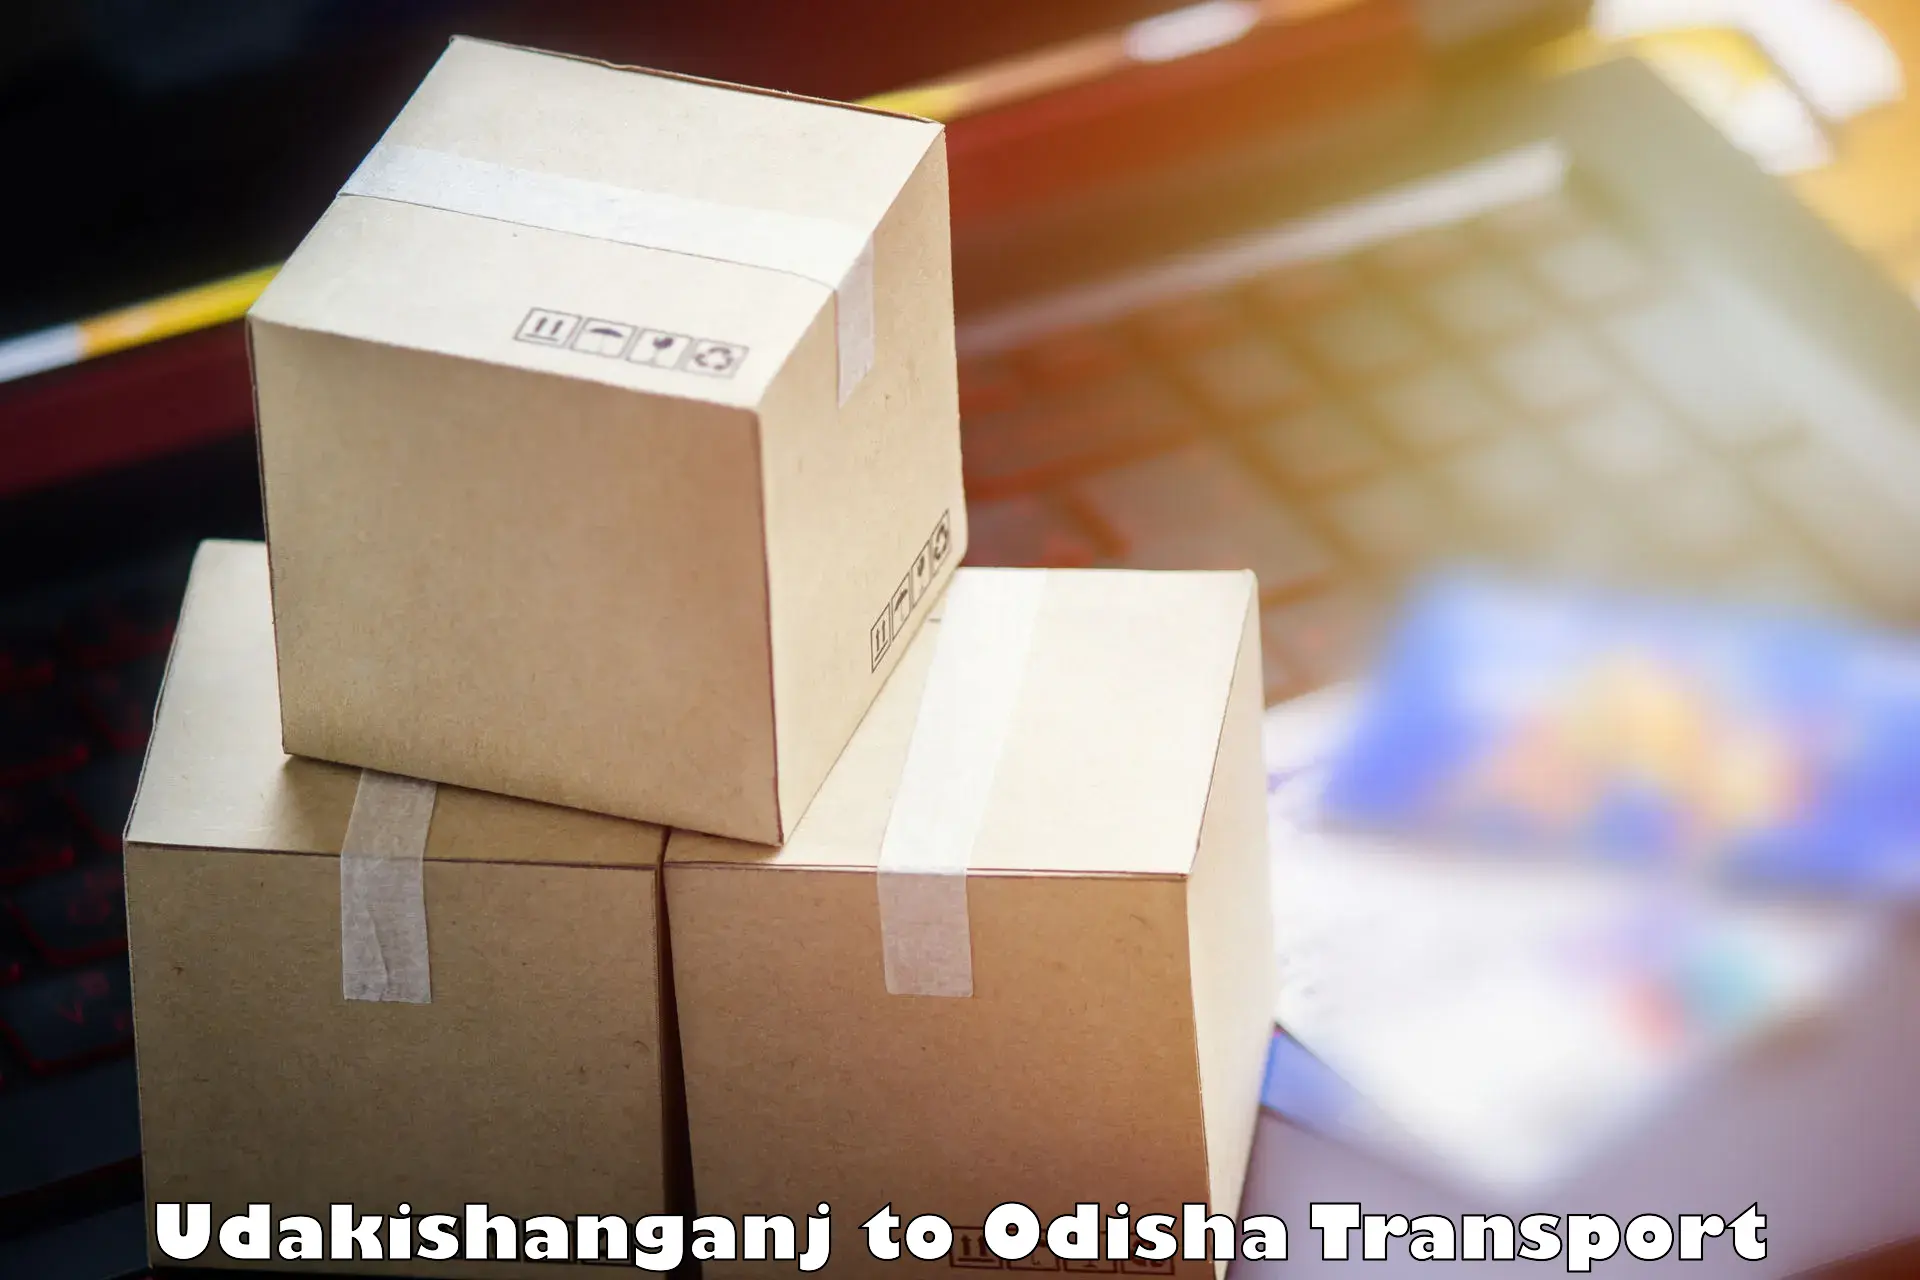 Cargo transport services Udakishanganj to Digapahandi